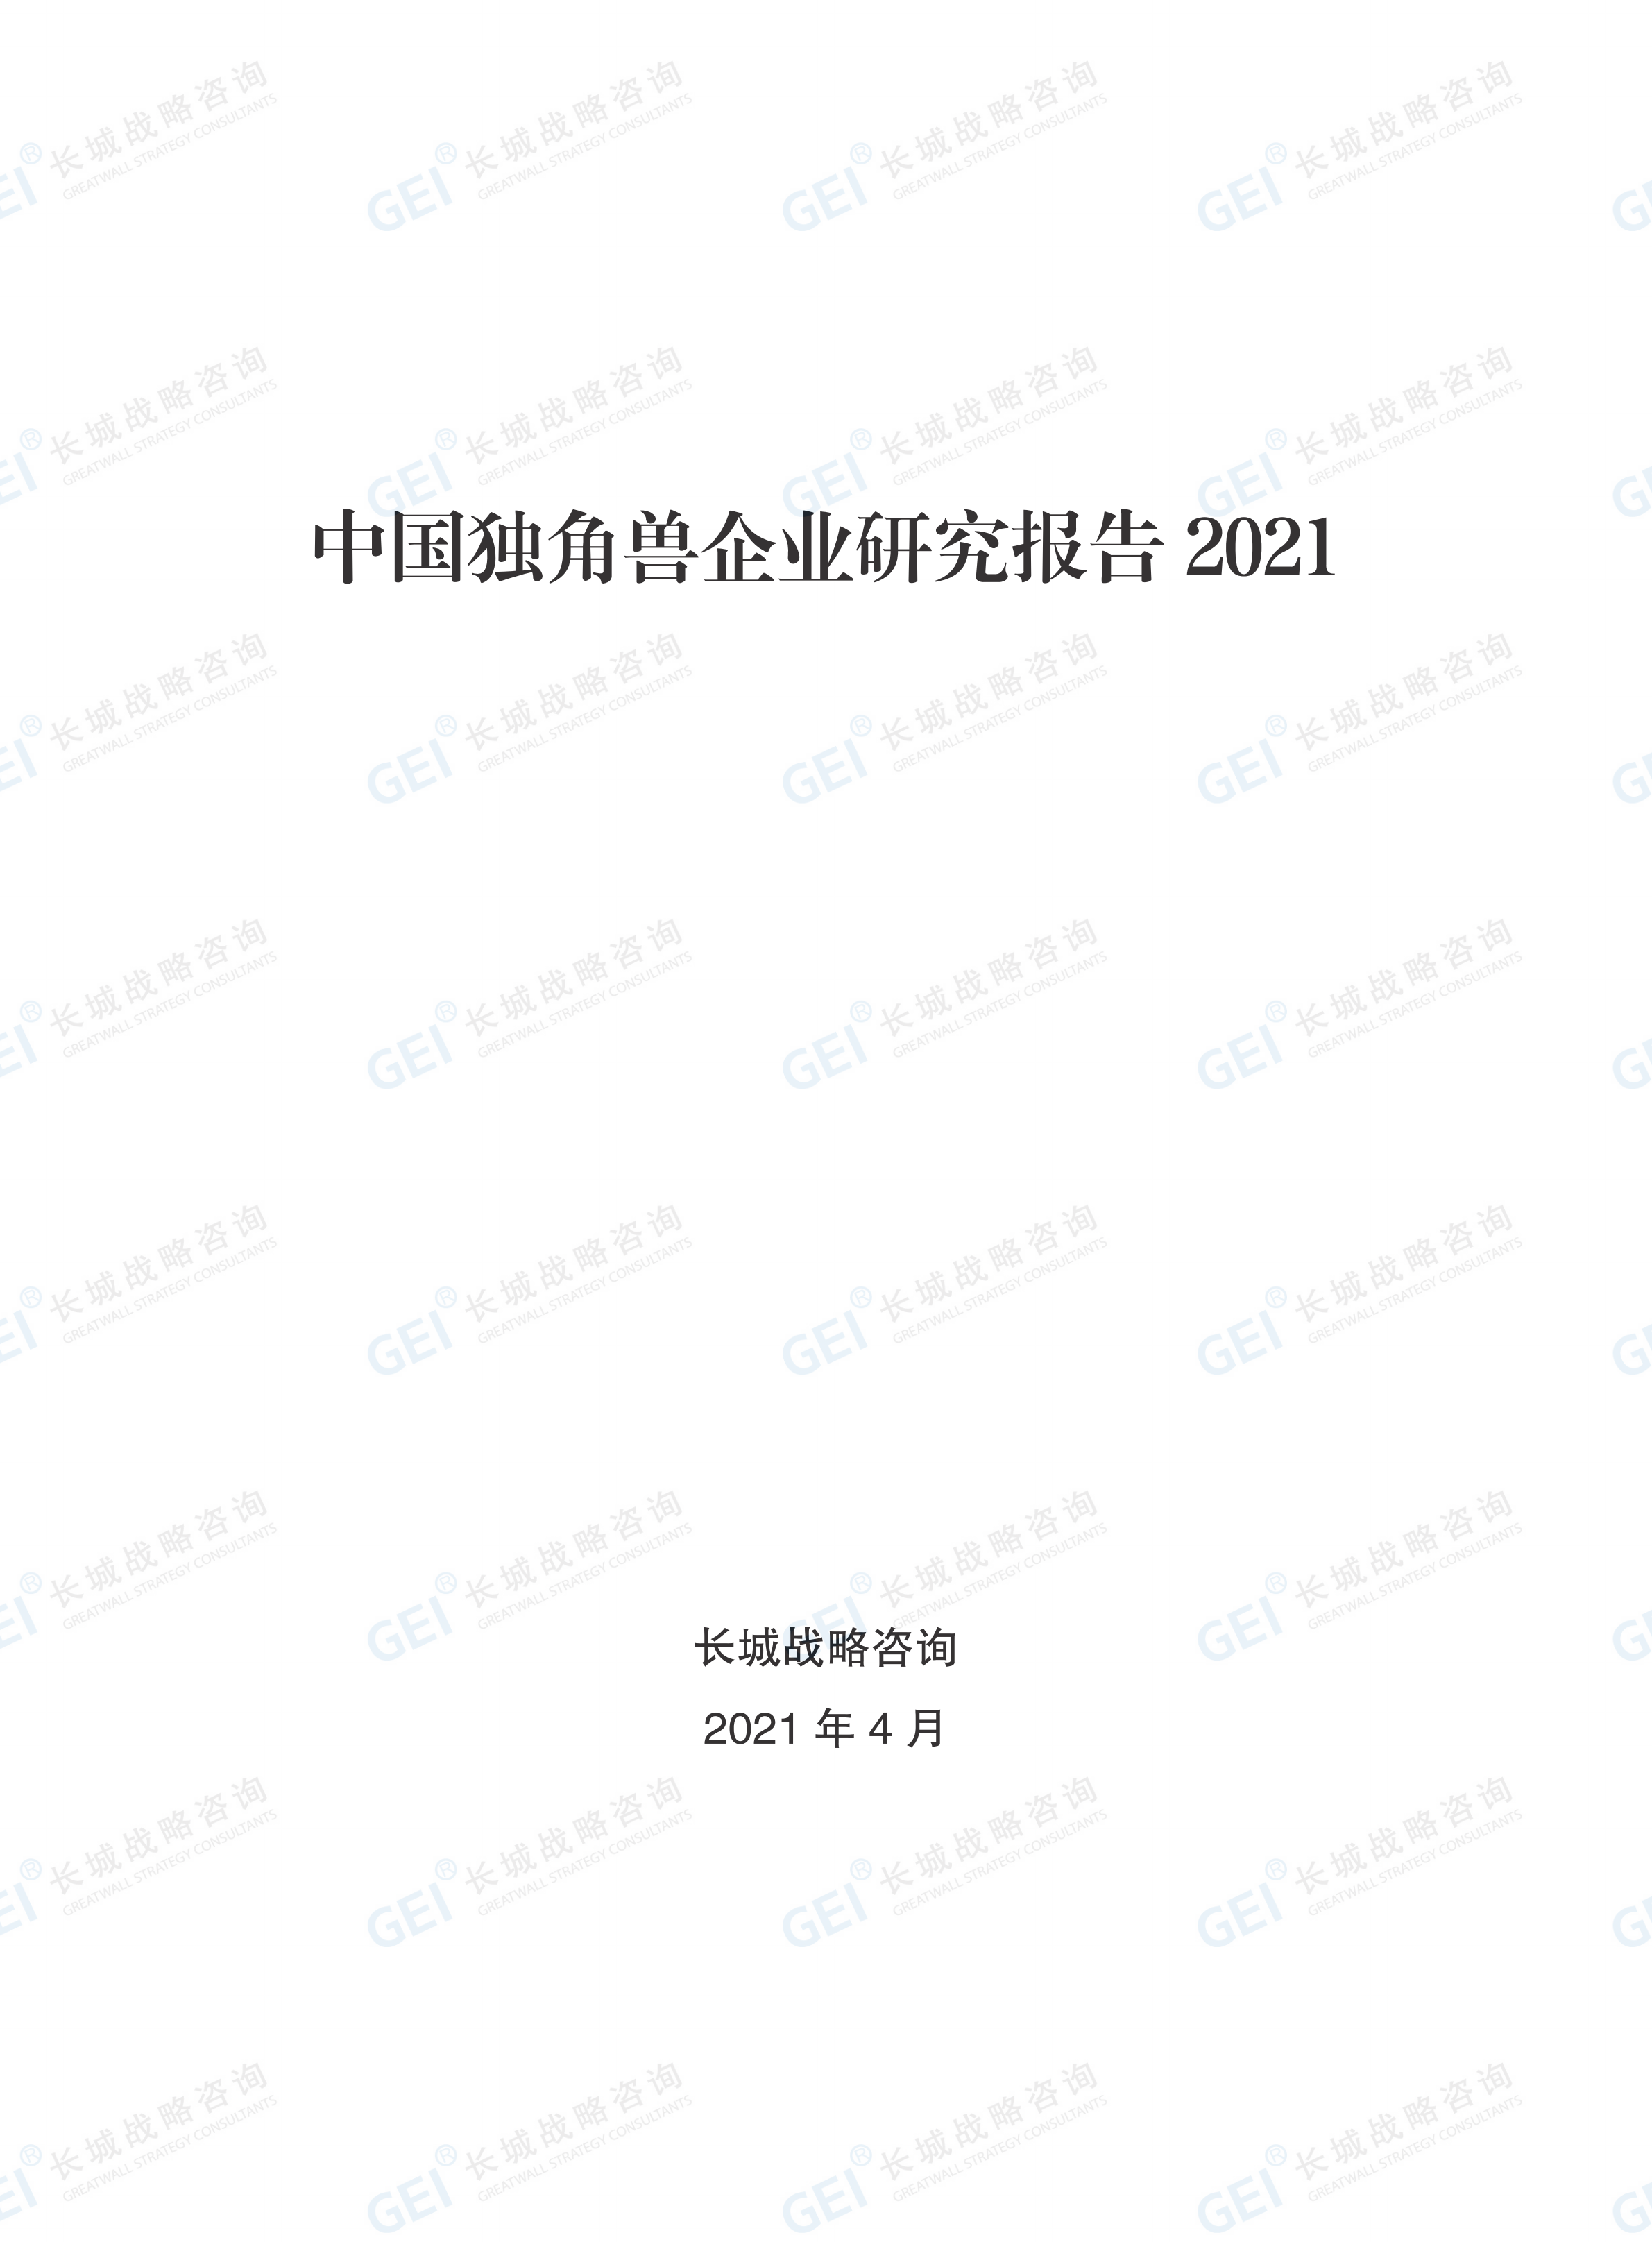 中國獨角獸企業研究報告2021-水印(1)_01.png